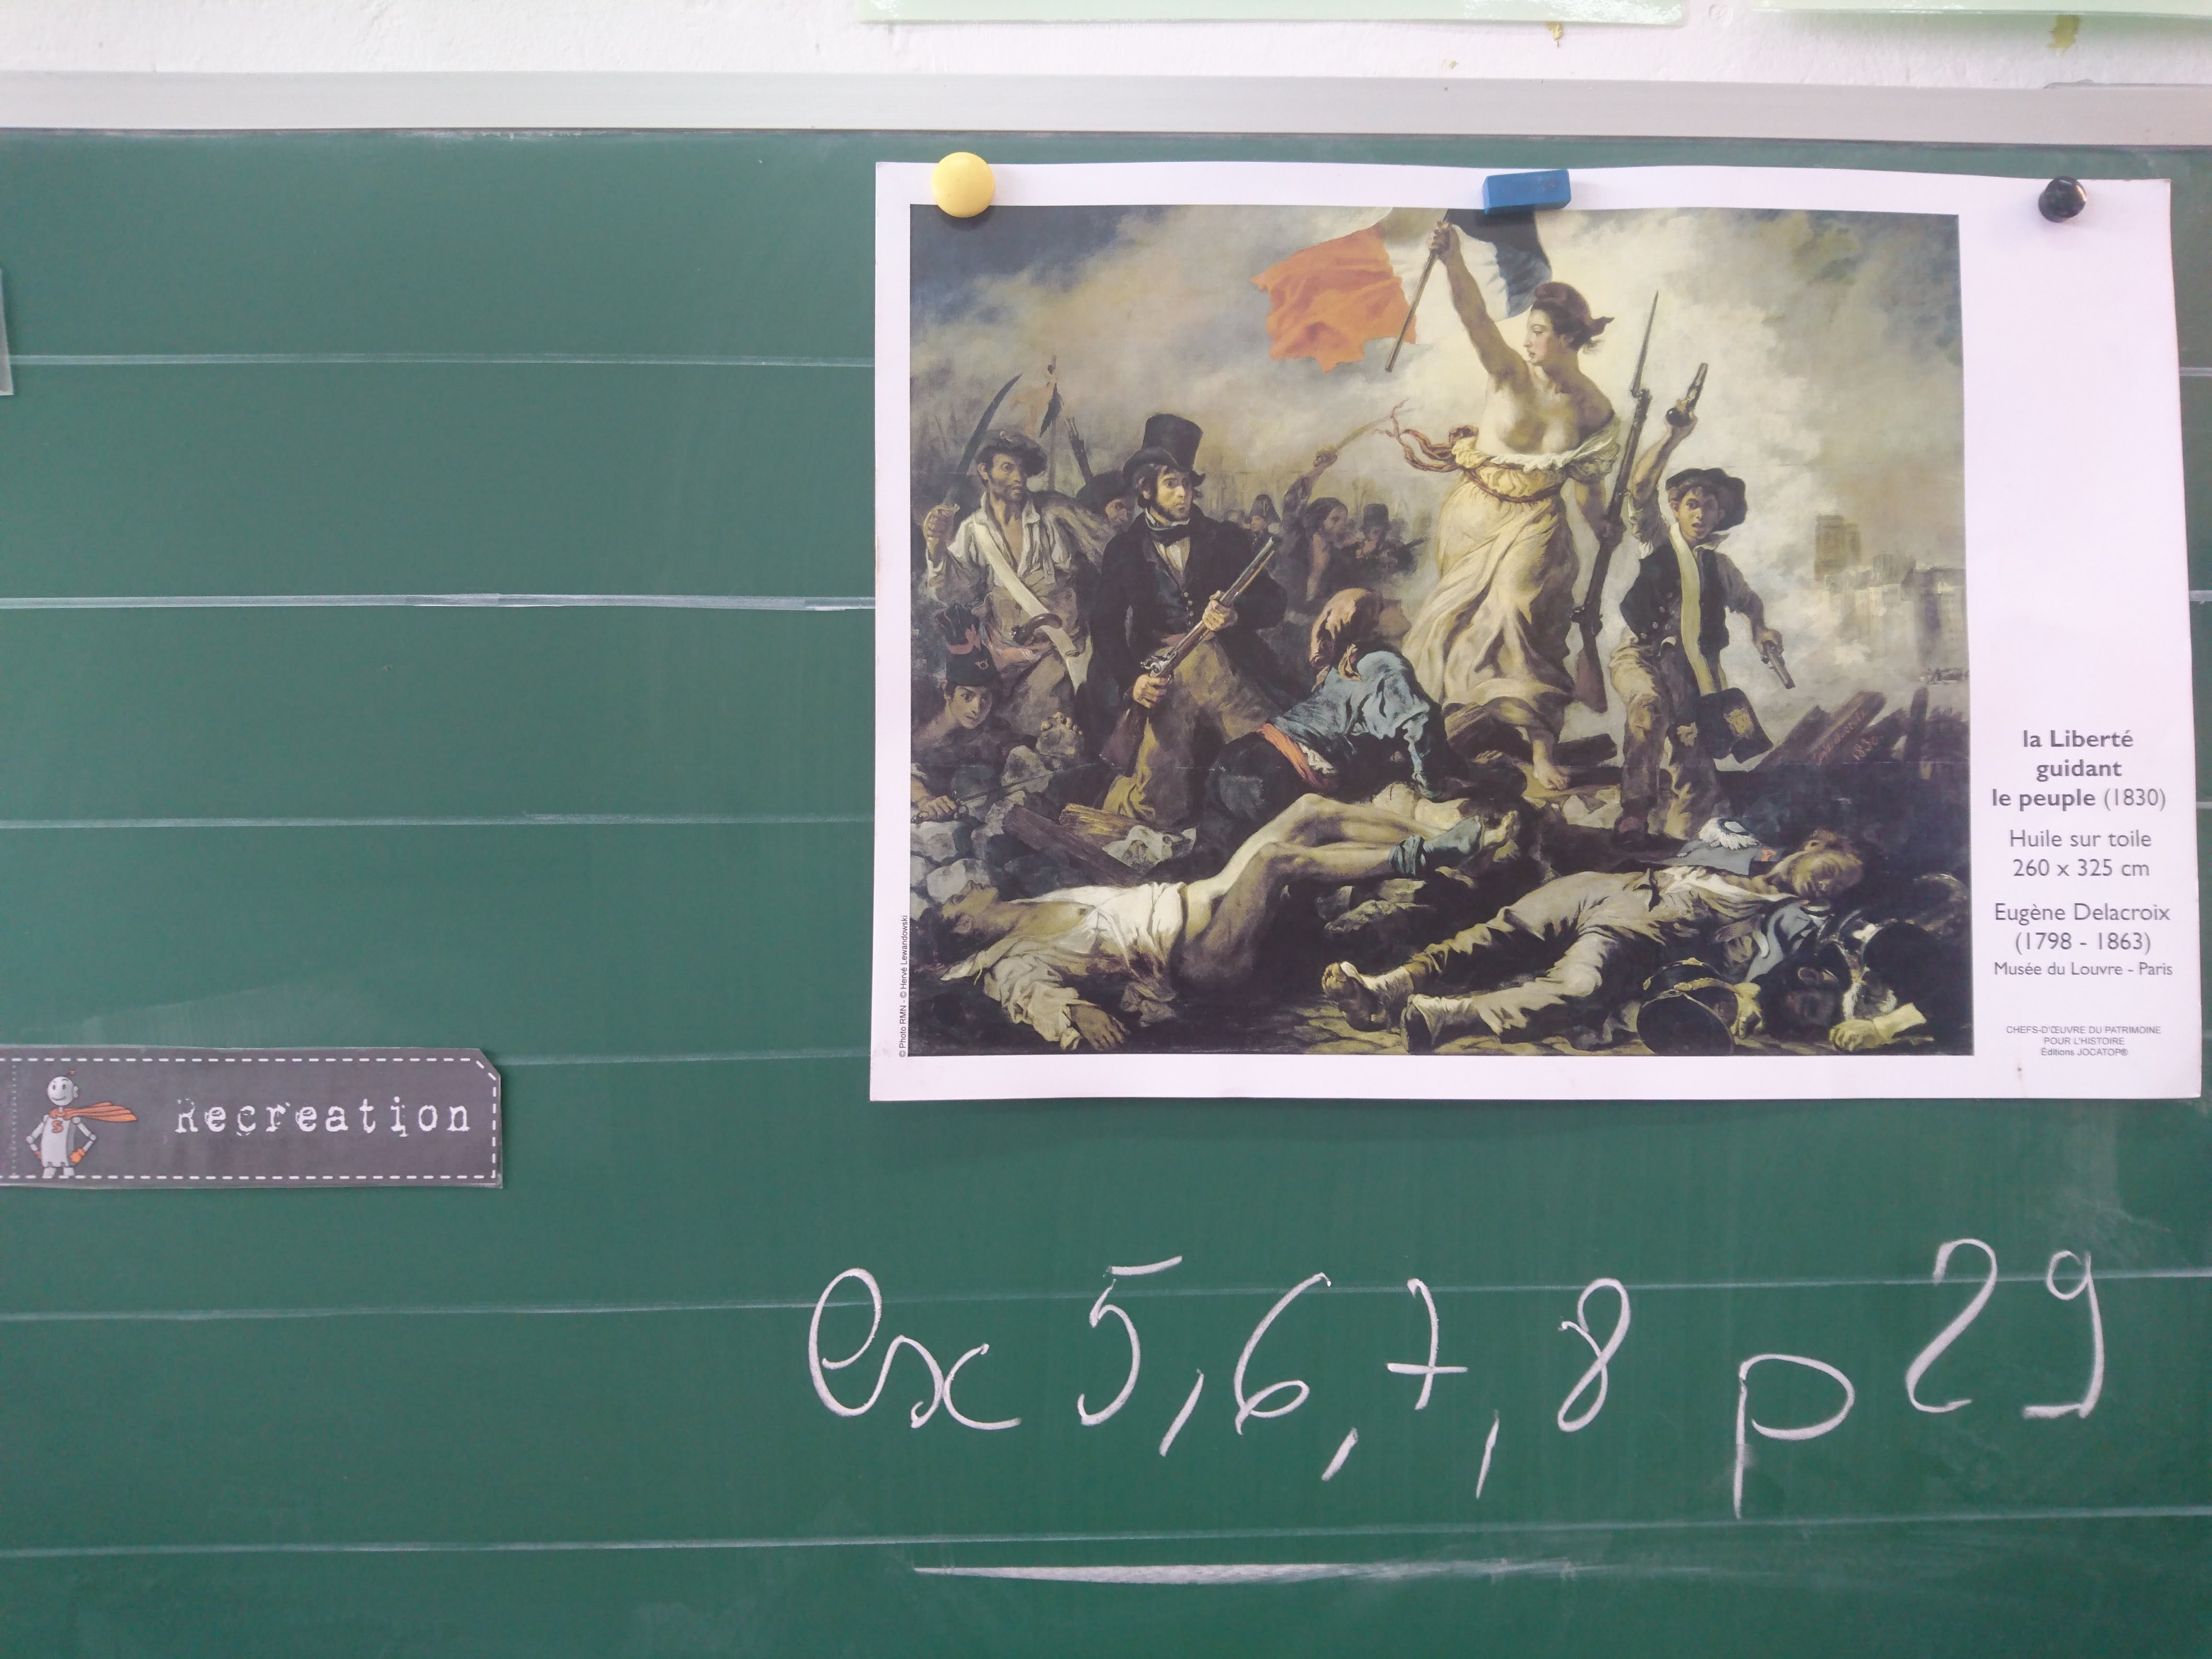 Une peinture célèbre de la révolution française accrochée au tableau. Et les exercices à faire en devoir juste en dessous ?